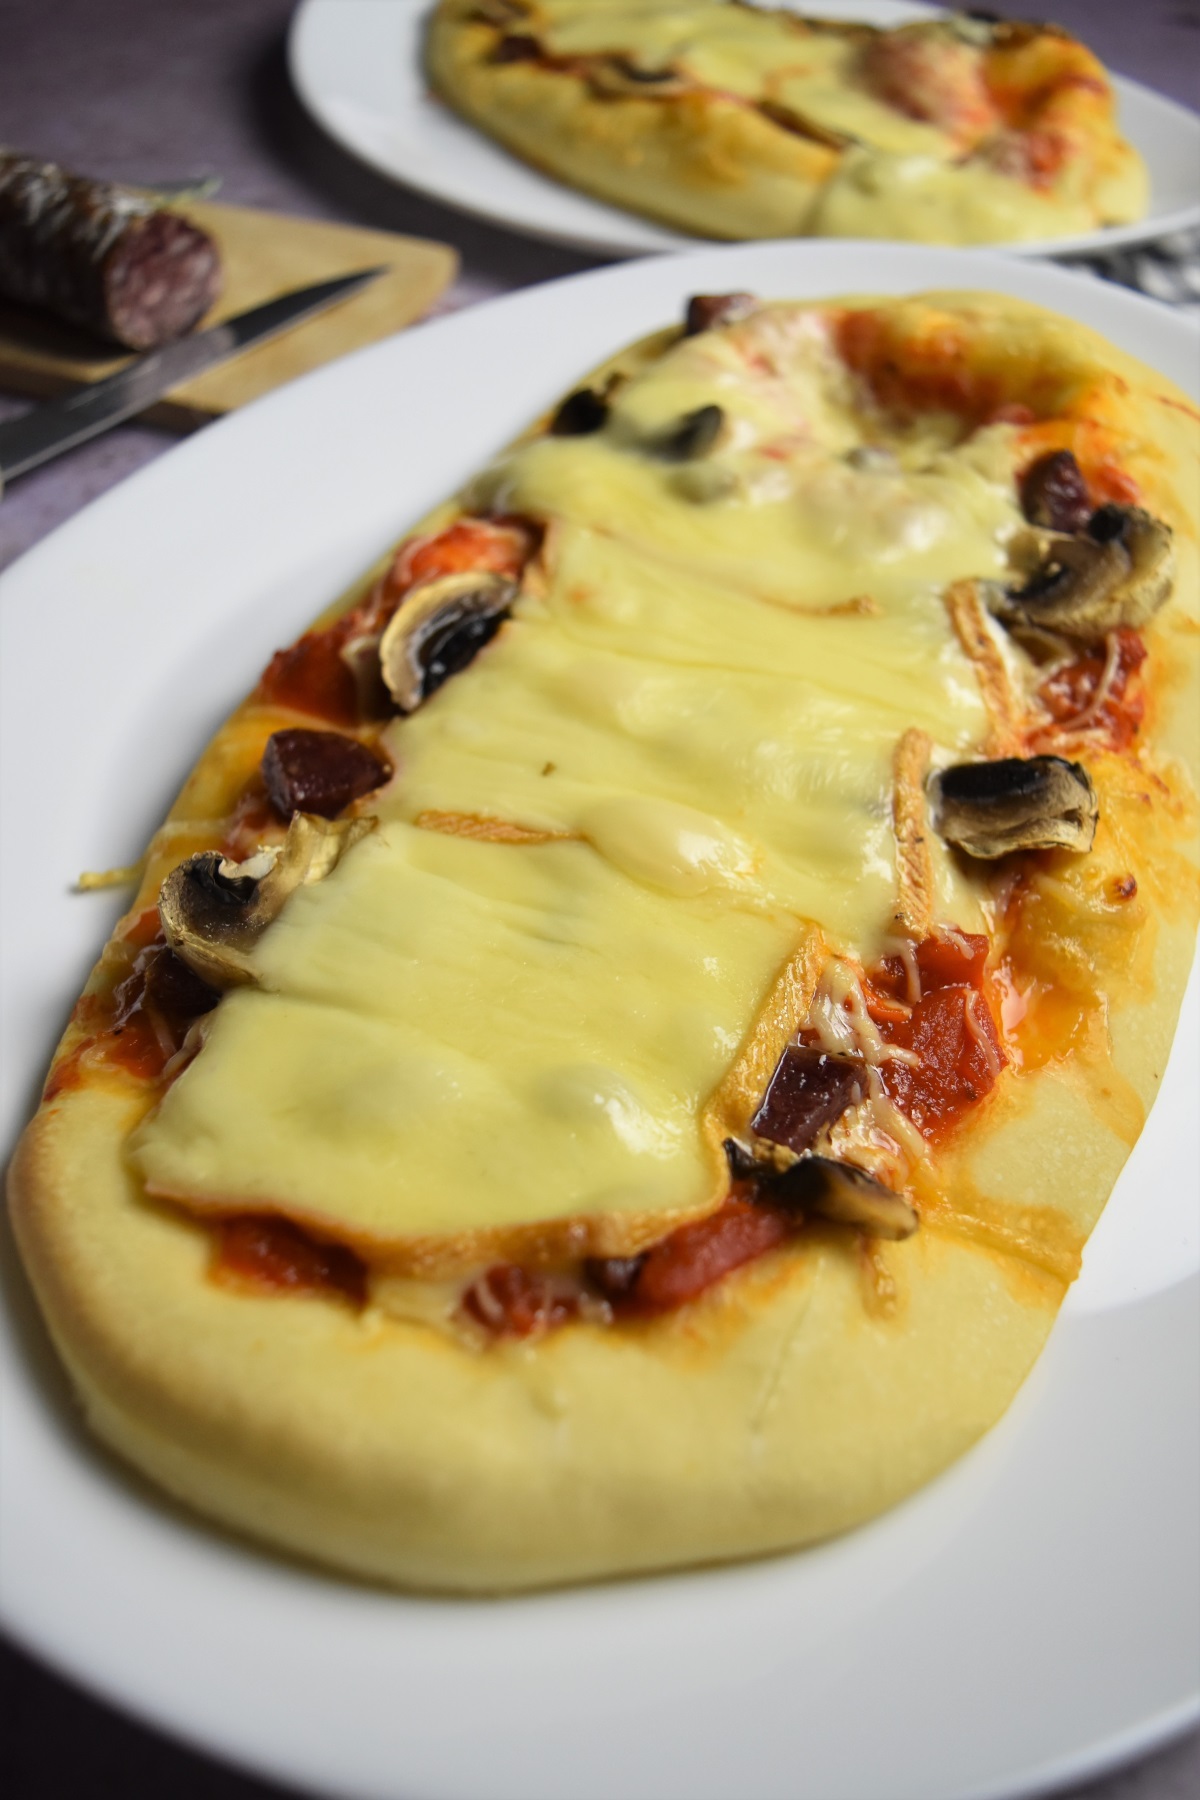 Pizza au fromage à raclette